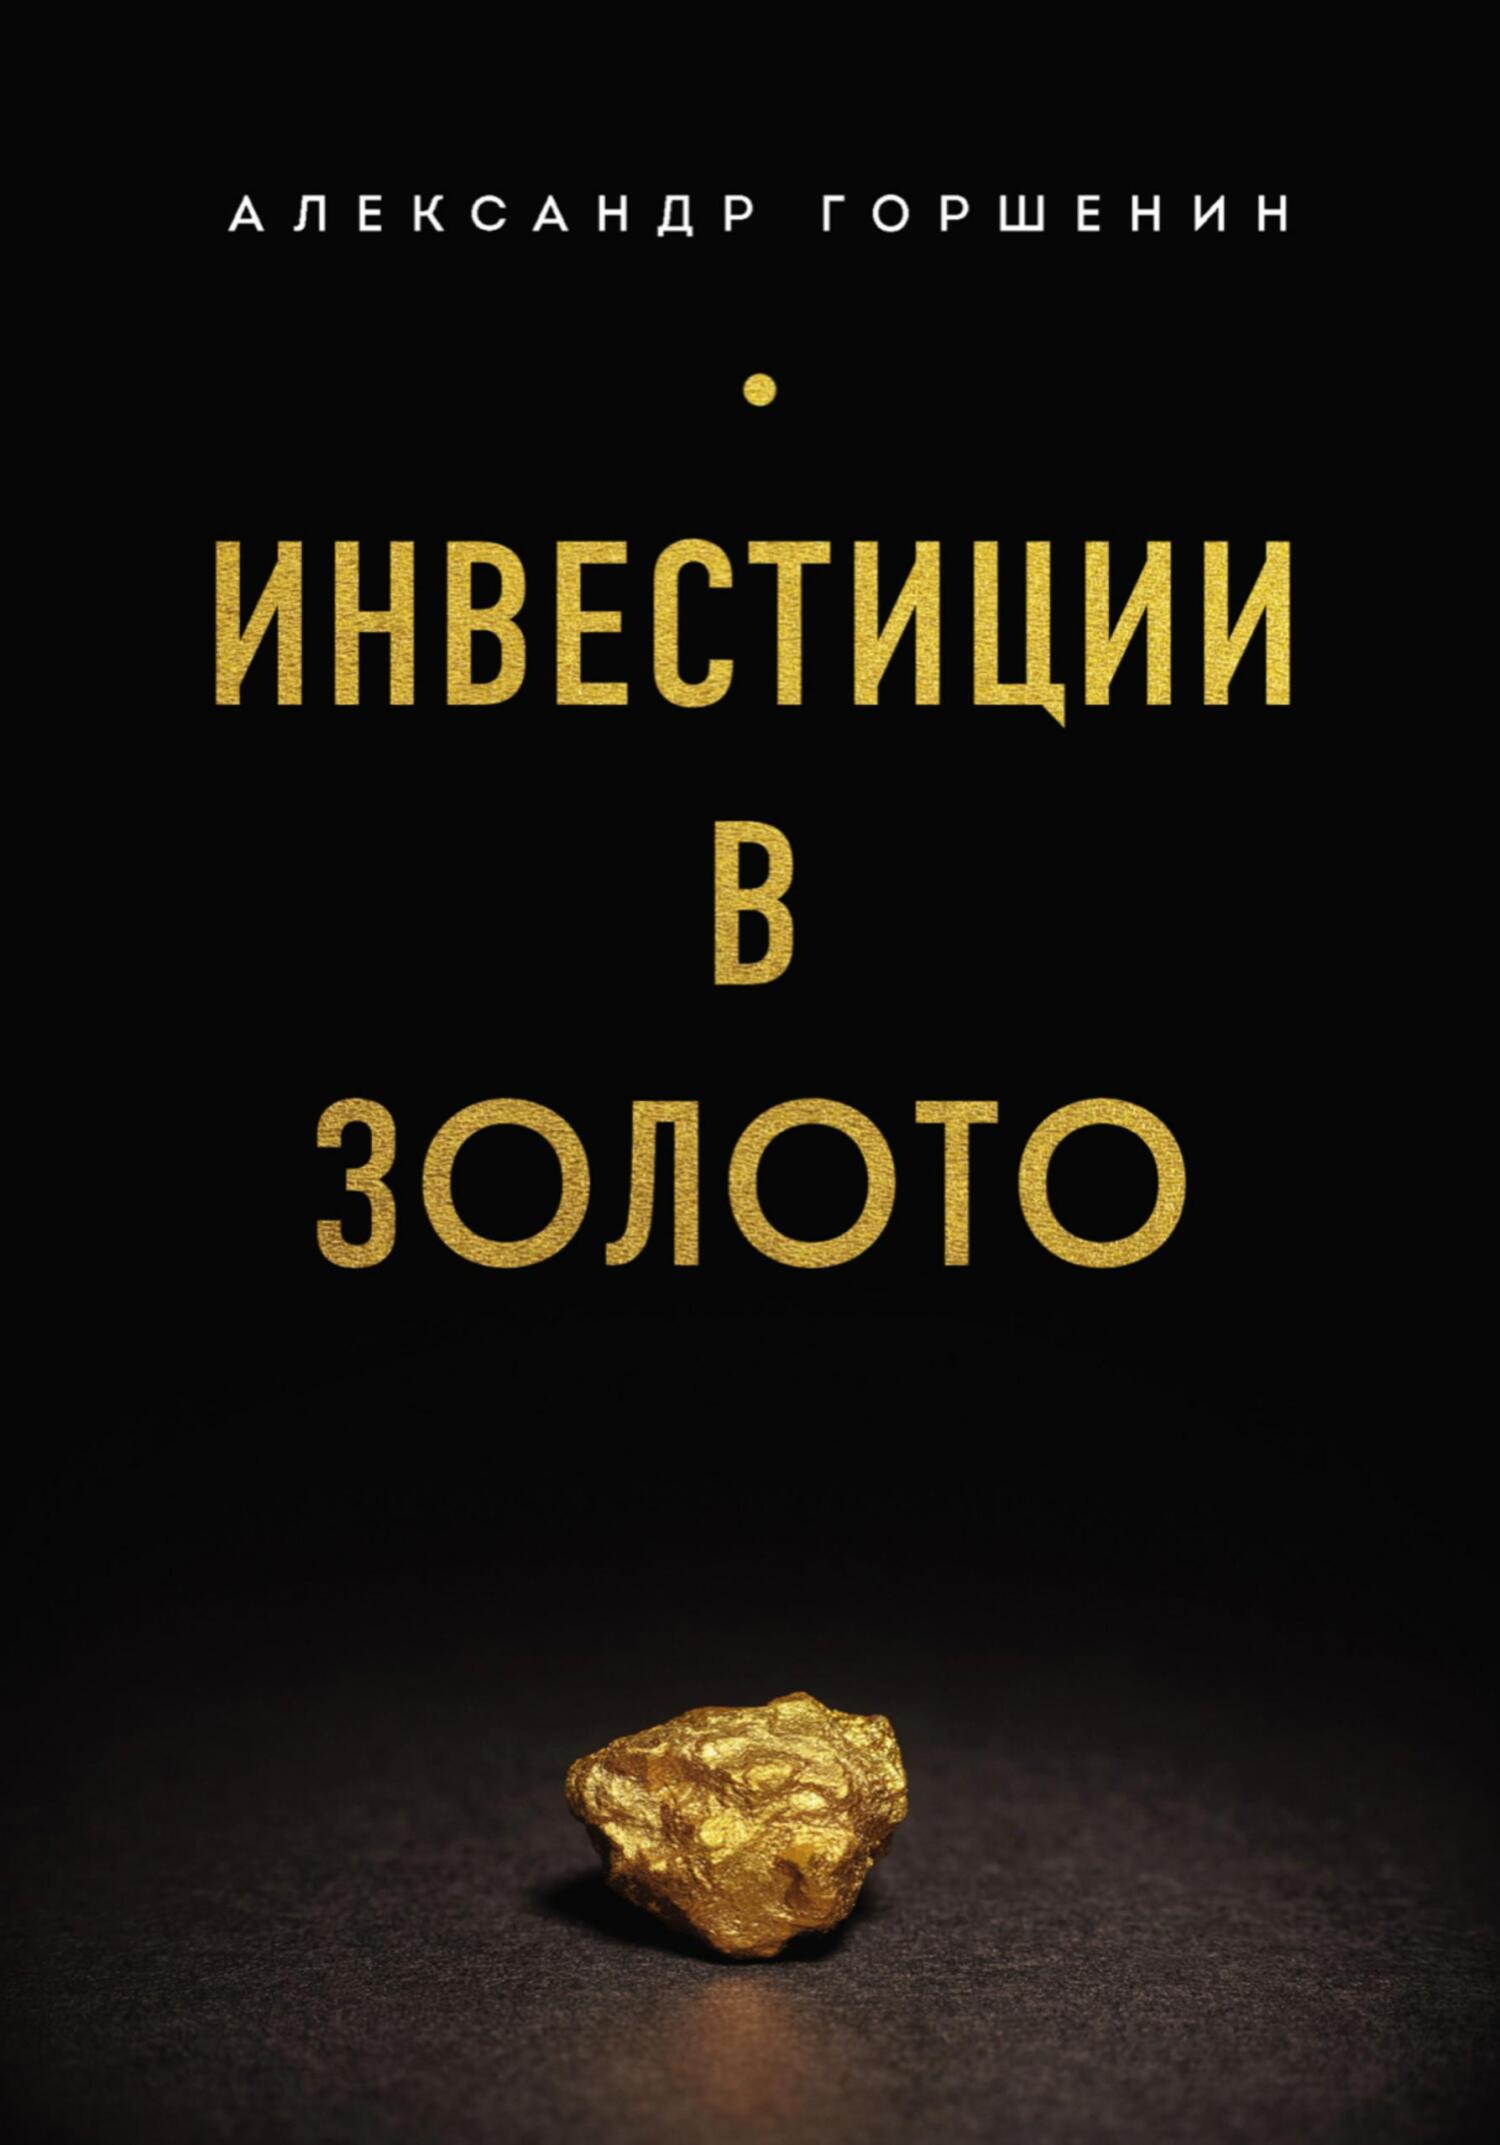 Книга  Инвестиции в золото созданная Александр Горшенин может относится к жанру личные финансы, просто о бизнесе, ценные бумаги / инвестиции. Стоимость электронной книги Инвестиции в золото с идентификатором 68612842 составляет 690.00 руб.